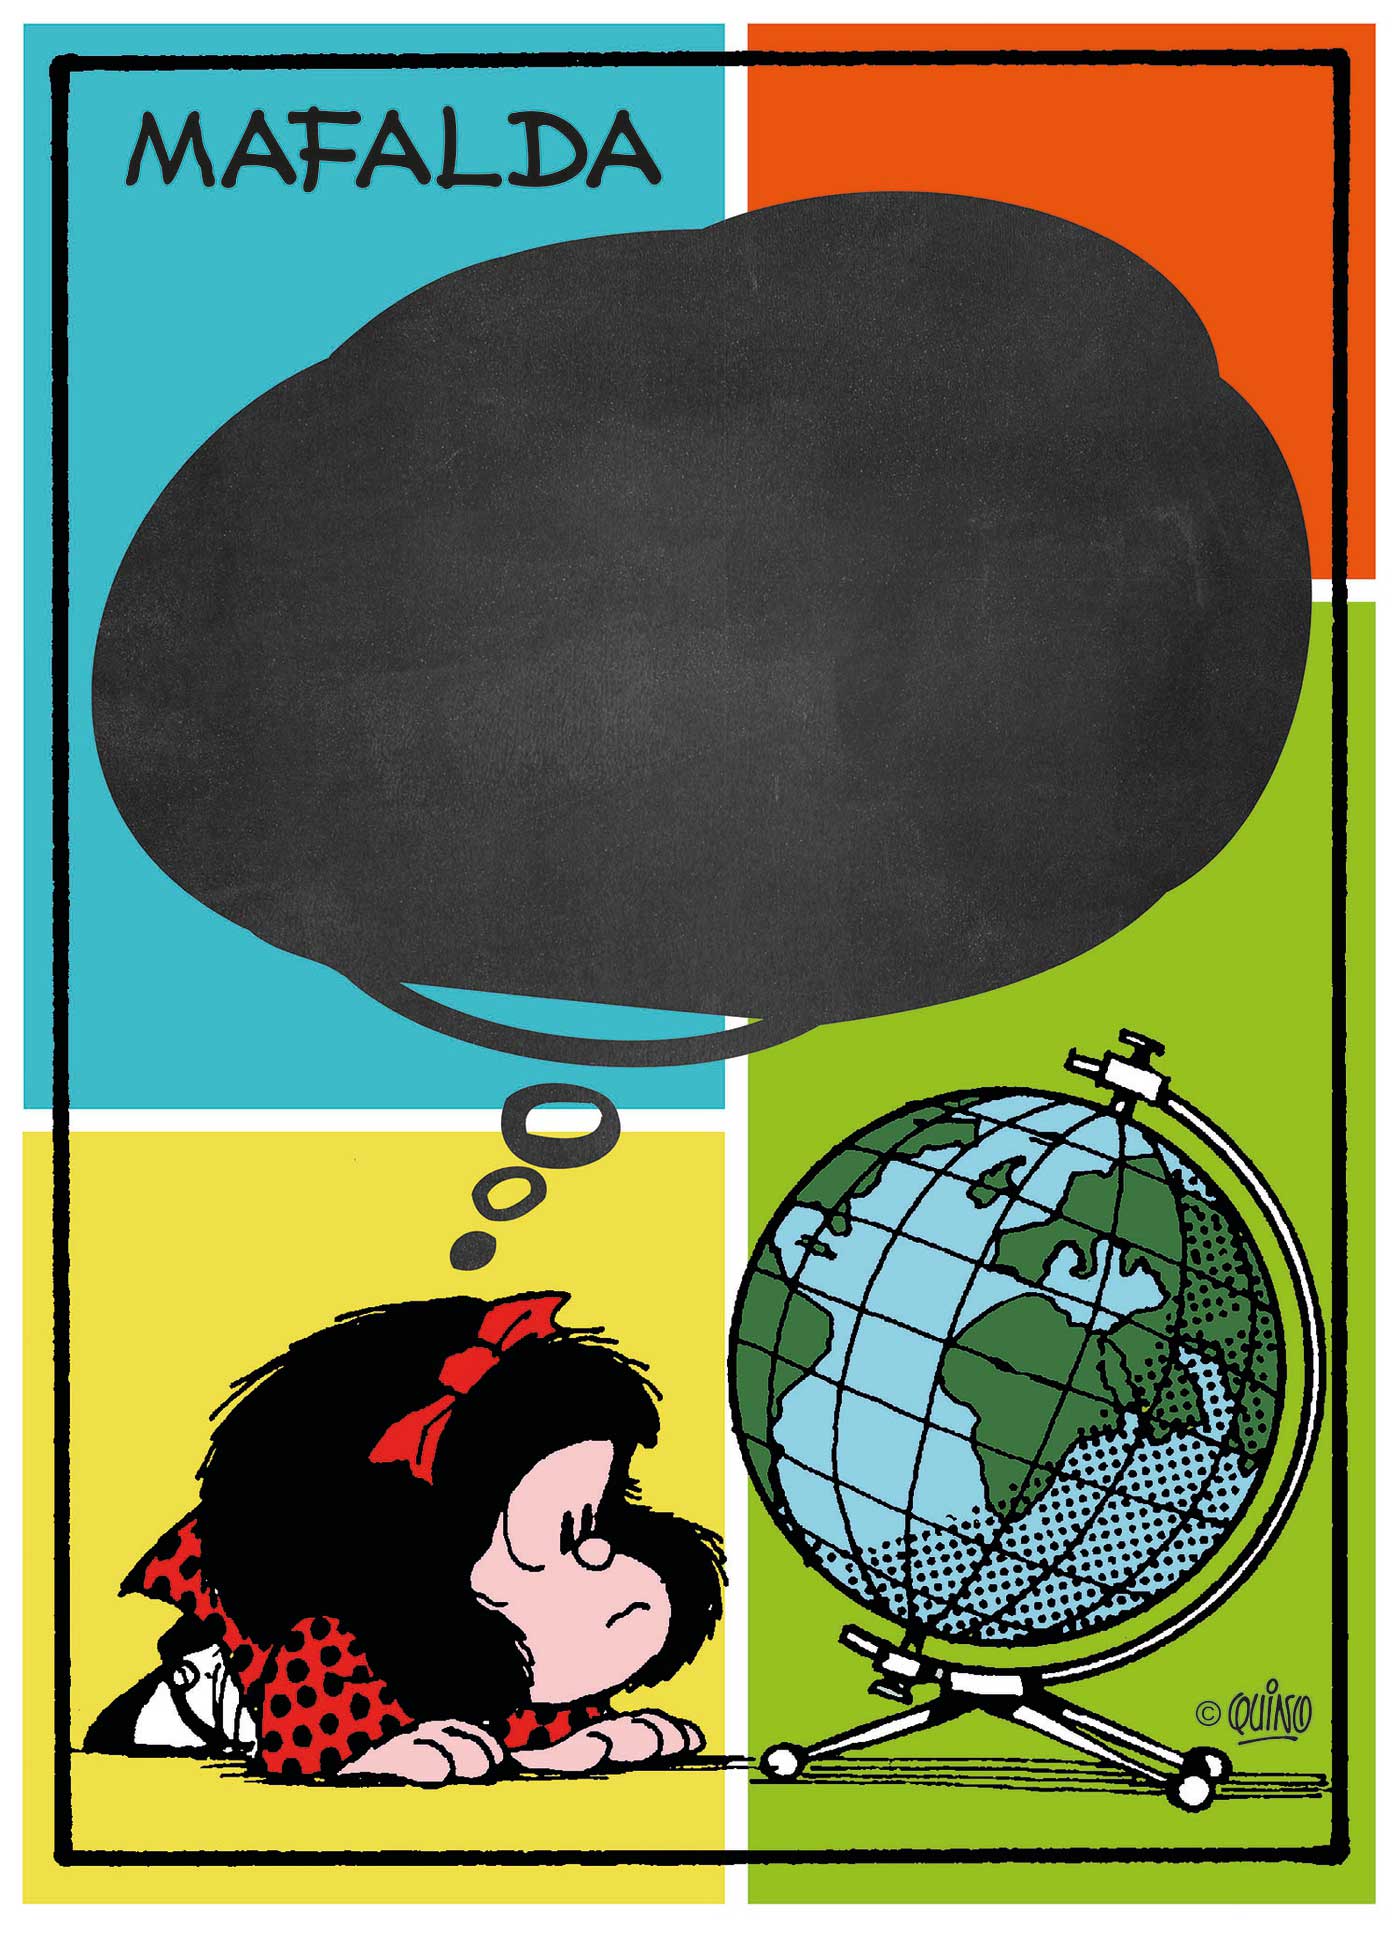 Puzzle Clementoni Mafalda Pizarra de 1000 Piezas